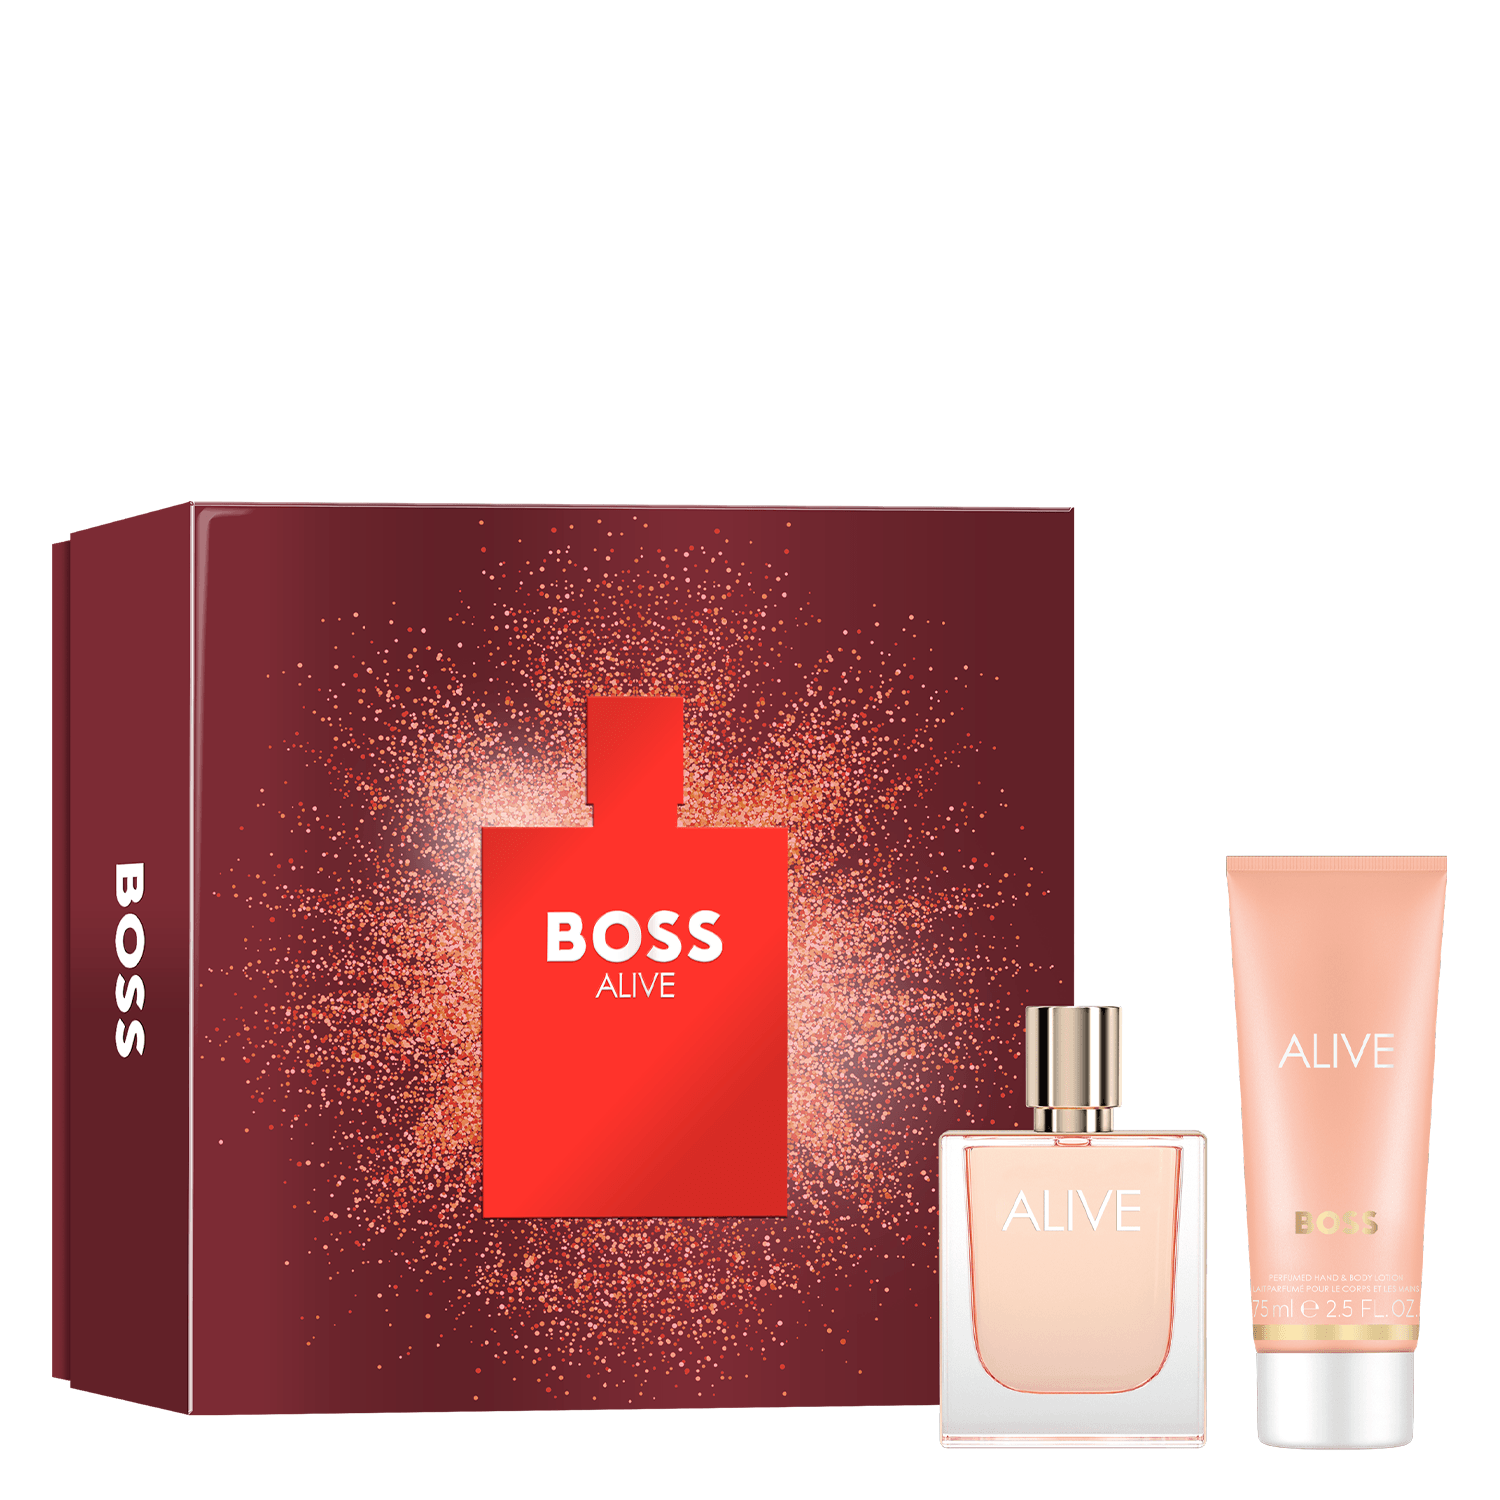 Produktbild von Boss Alive - Eau de Parfum & Body Lotion